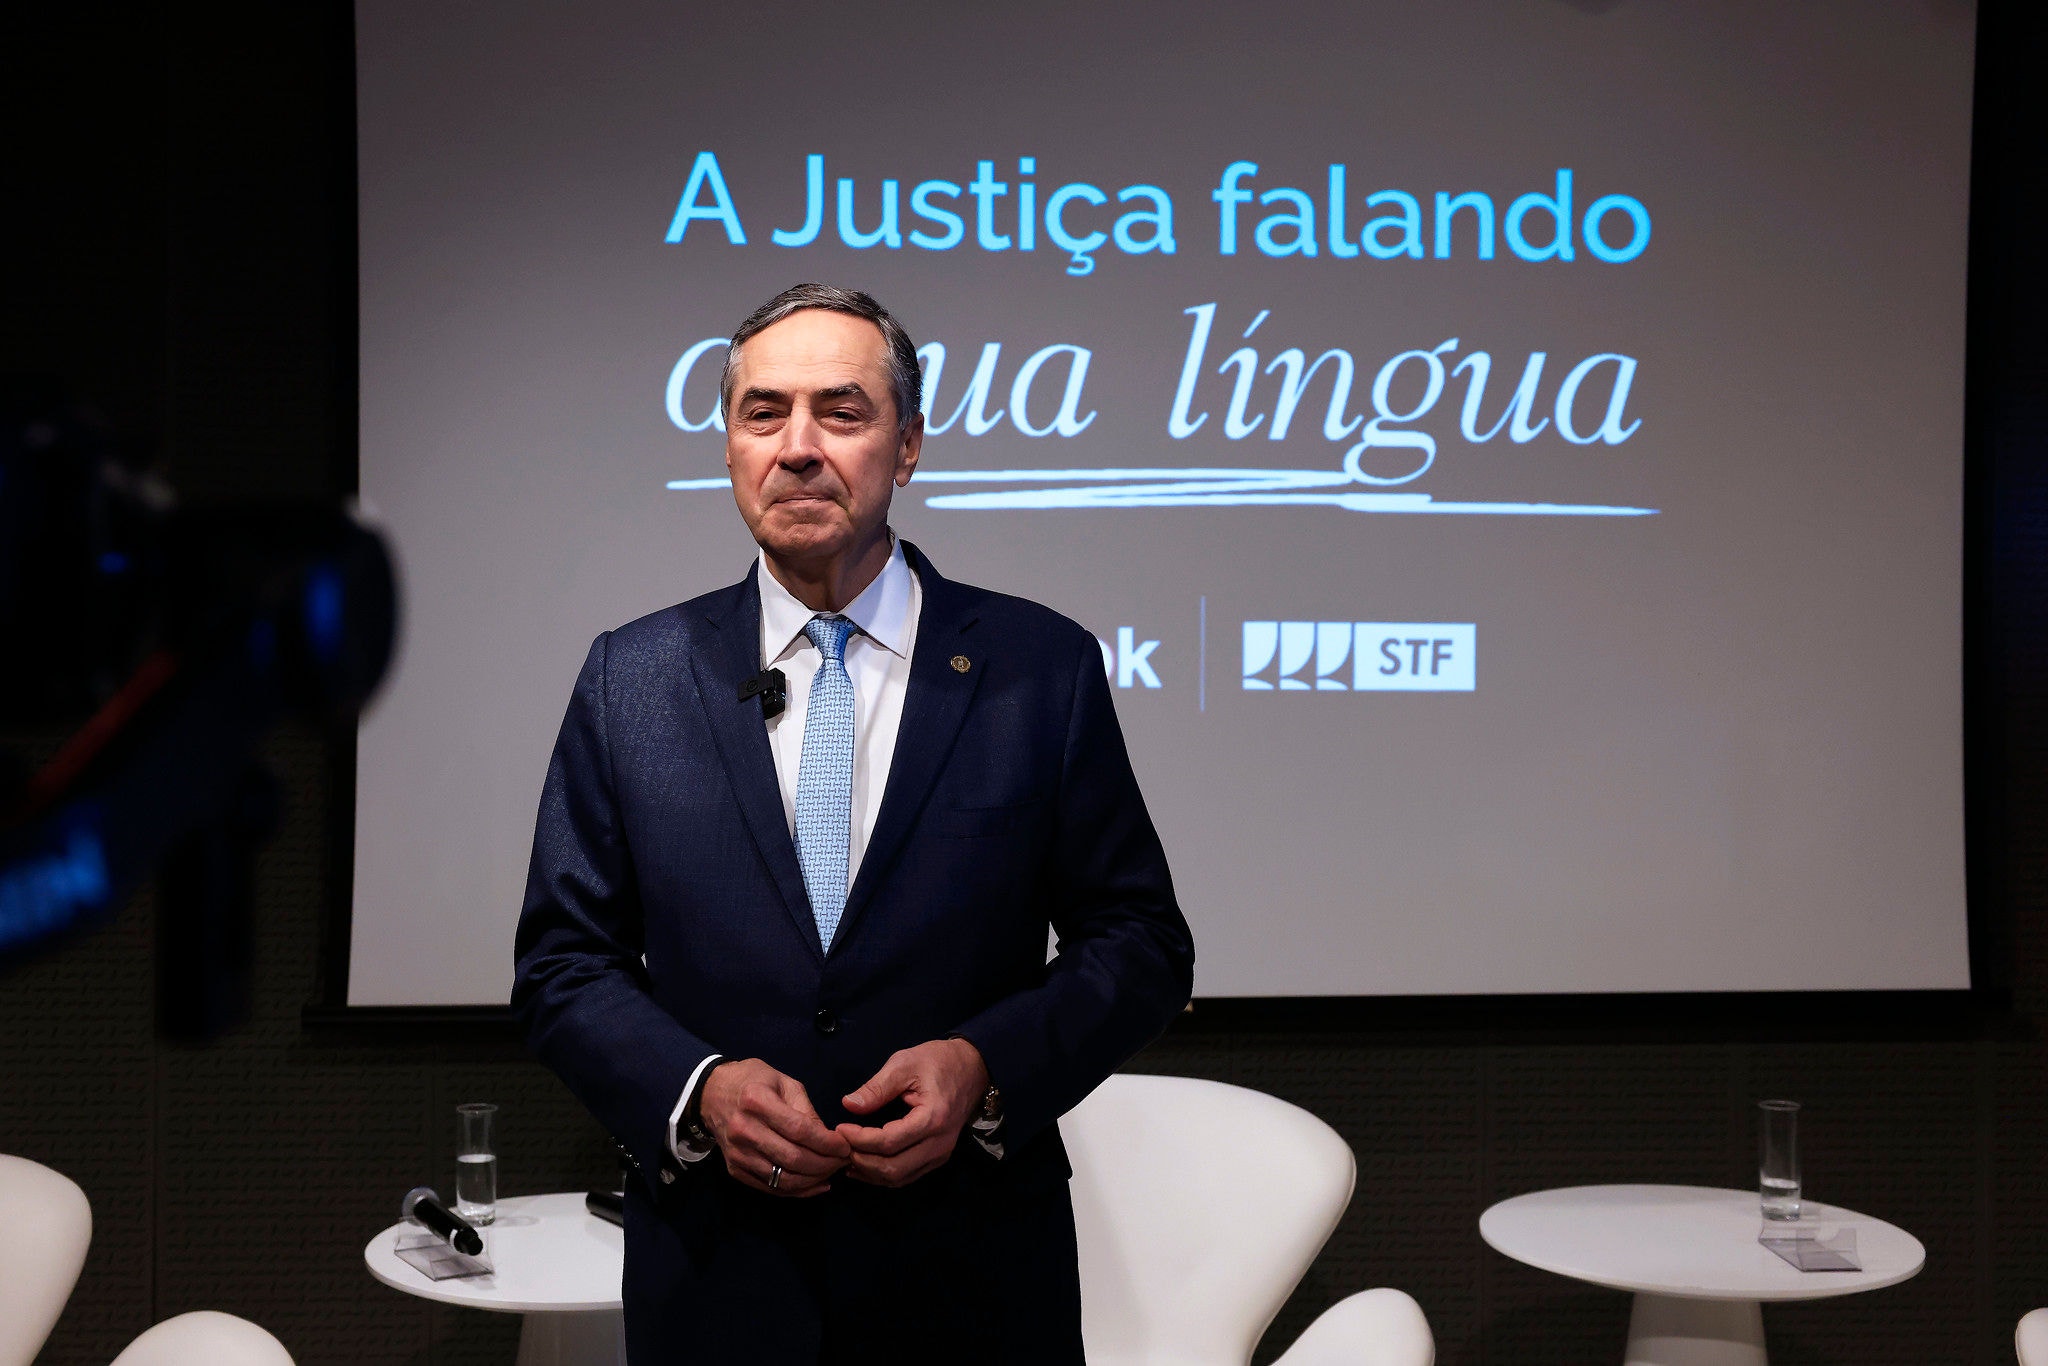 O ministro Luís Roberto Barroso durante evento 'Justiça falando a sua língua', em parceria com o TikTok.